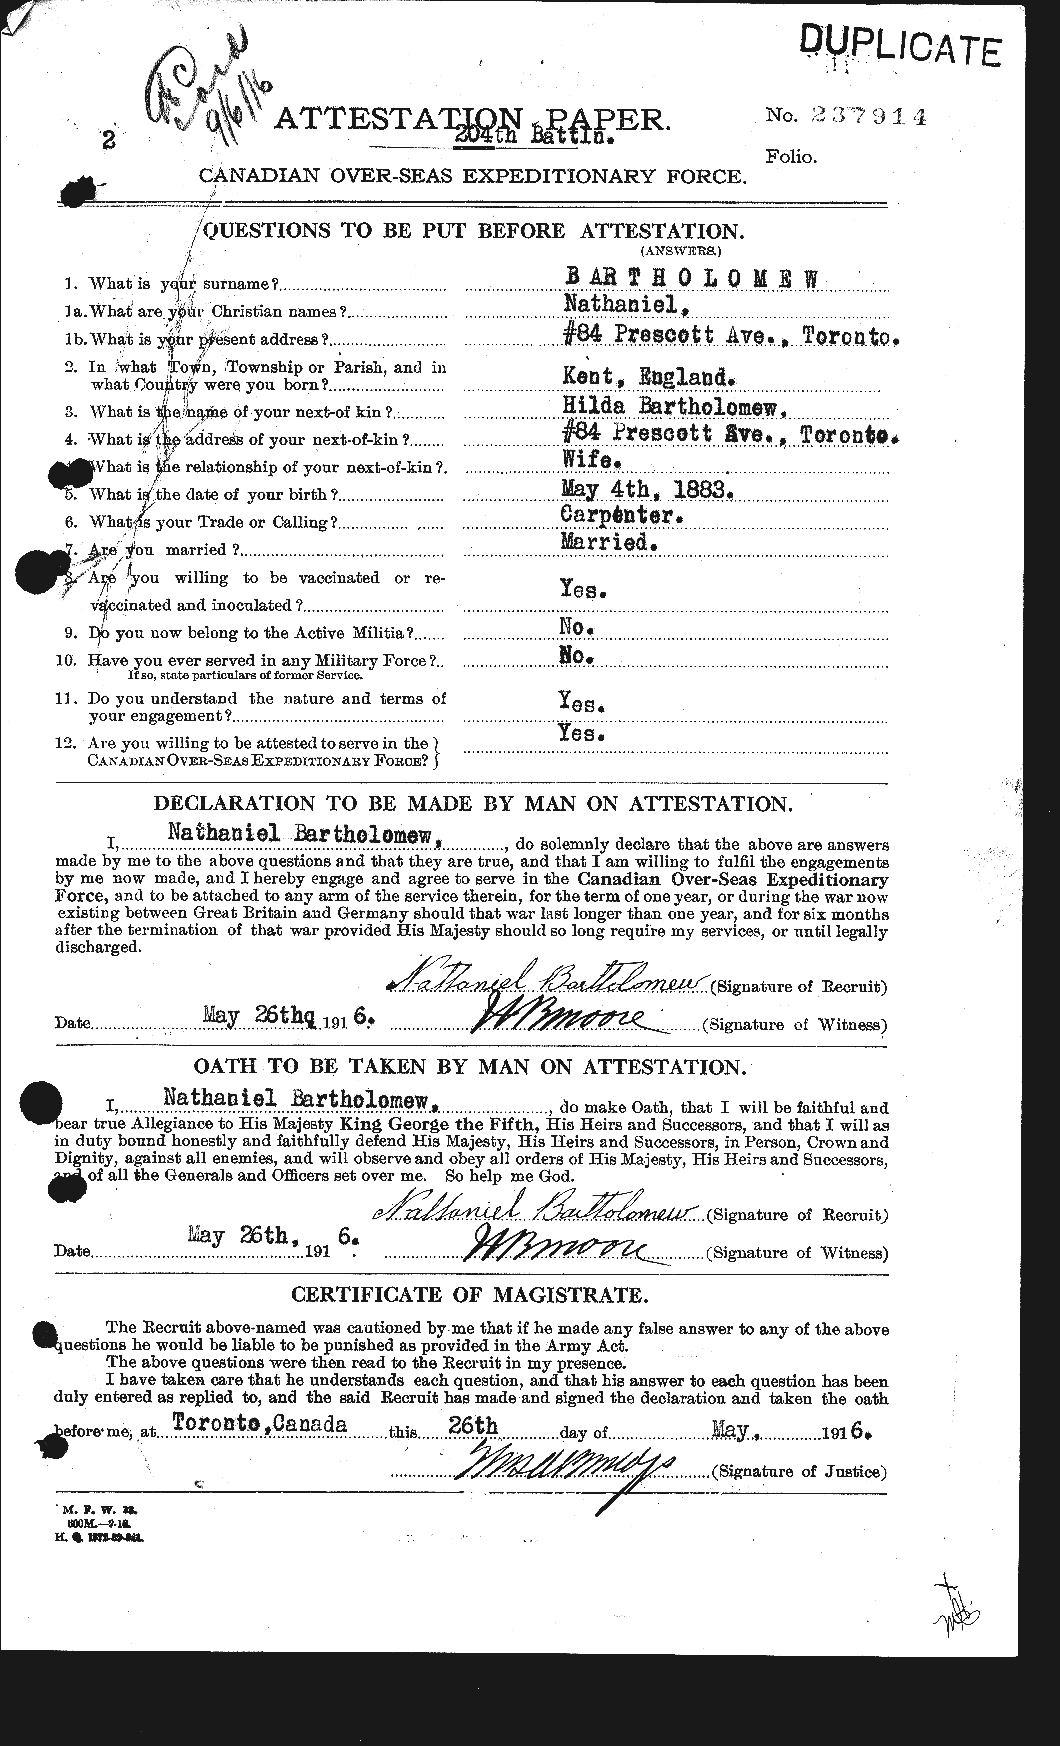 Dossiers du Personnel de la Première Guerre mondiale - CEC 229115a